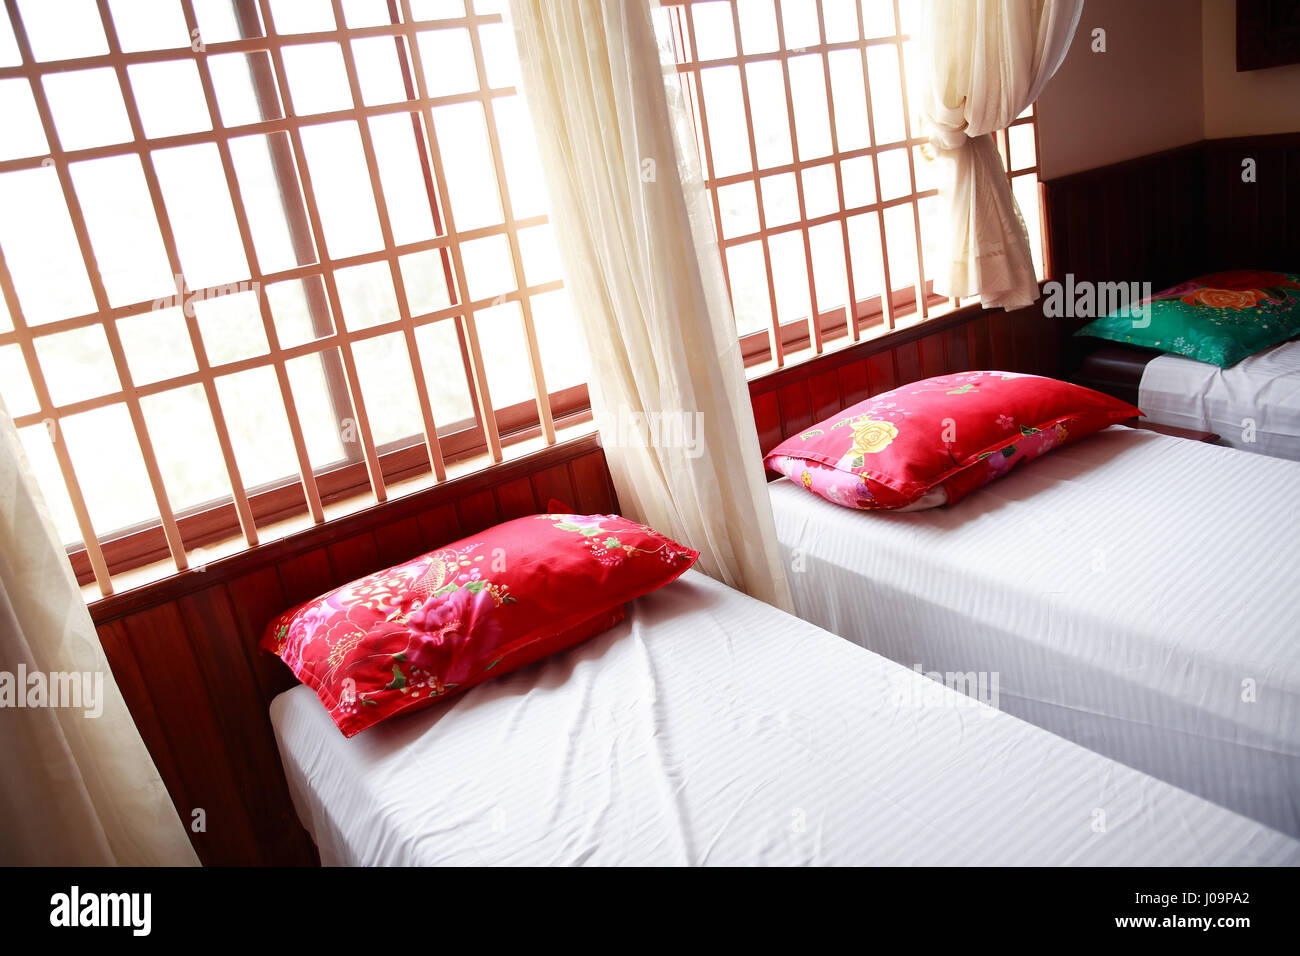 Lits pour le massage thaï avec des oreillers sur eux Banque D'Images